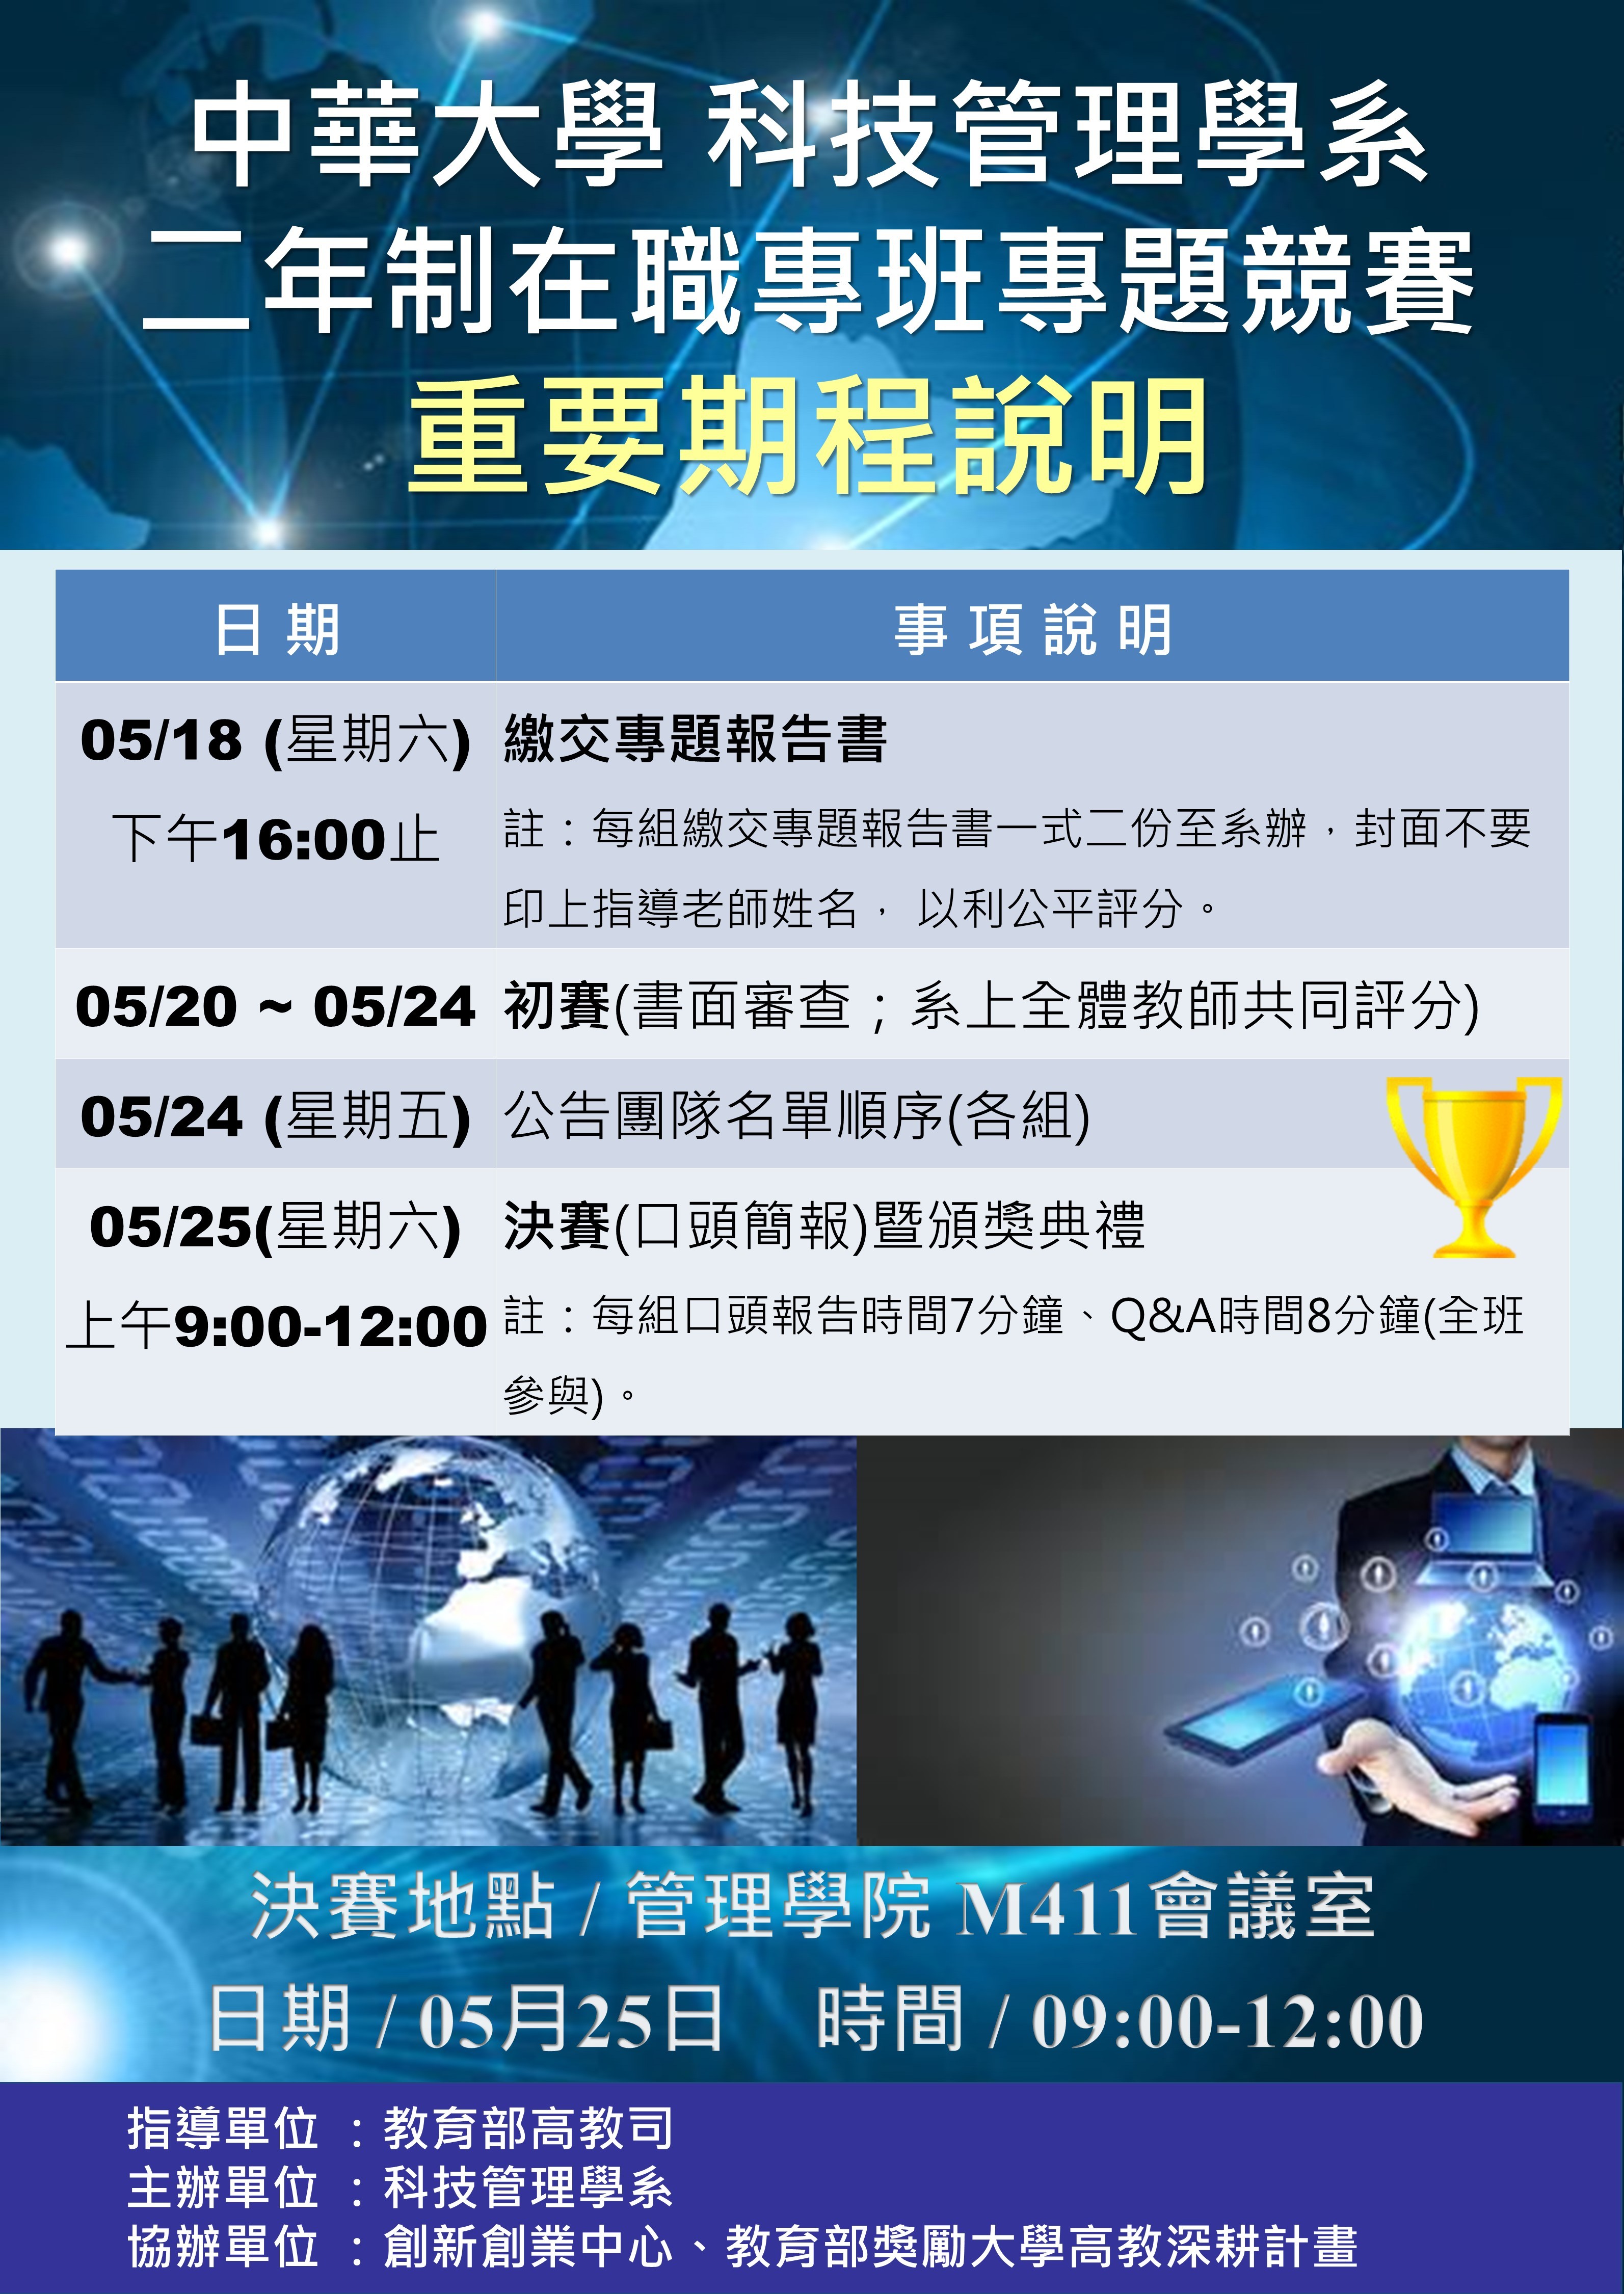 1080525中華大學科技管理學系二技專題競賽海報